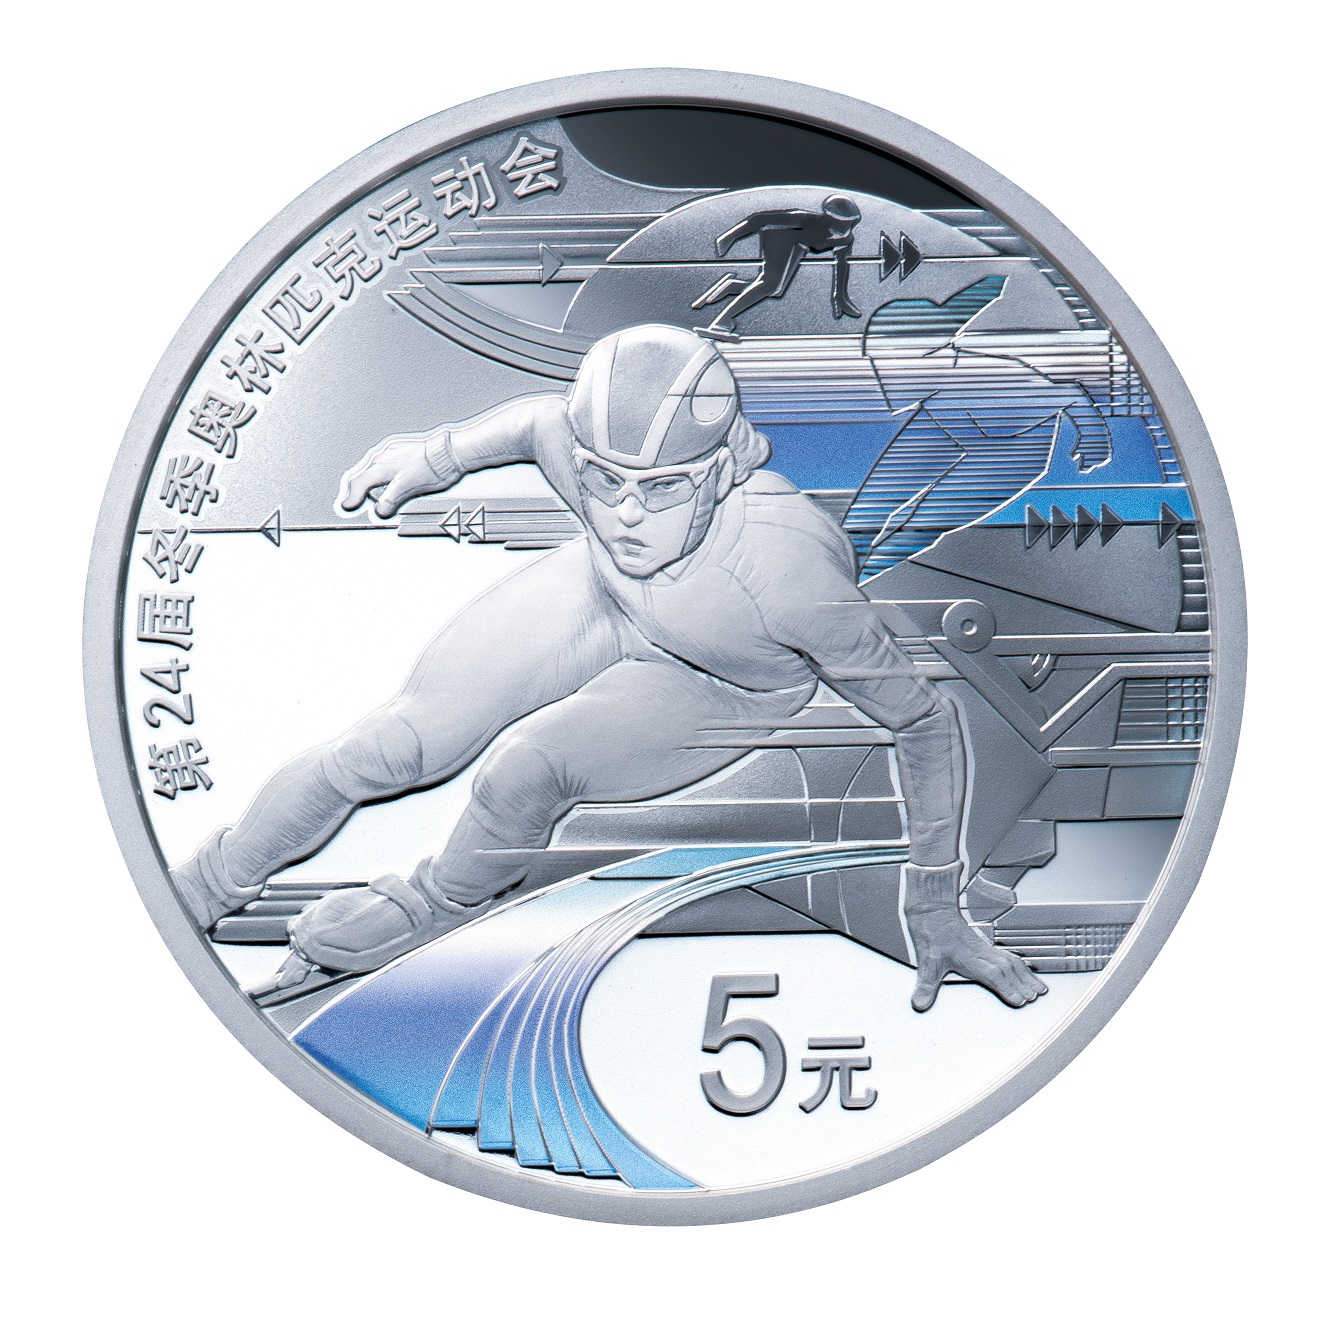 オリンピック冬季競技大会北京2022公式記念コイン」の取次販売開始 